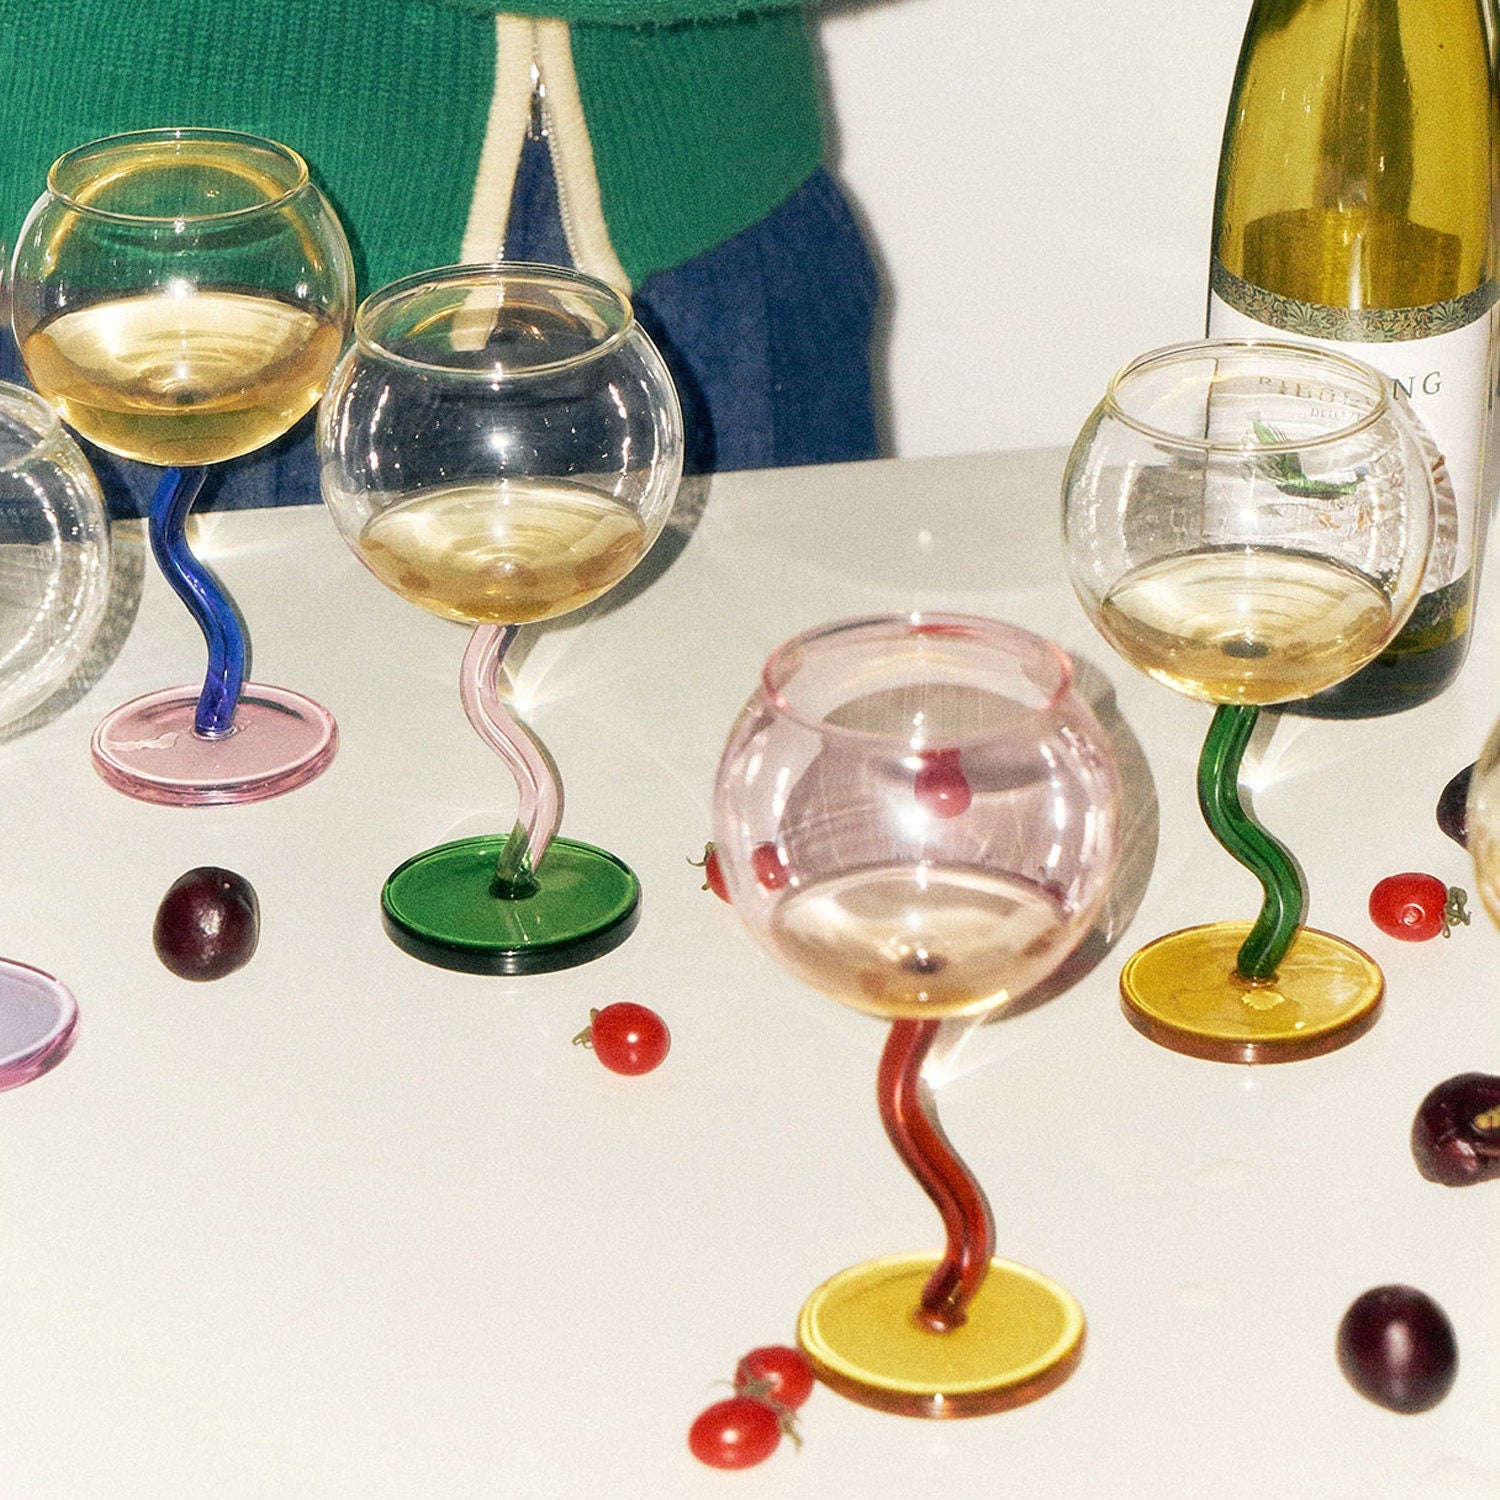 champagne glasses colored wine glasses